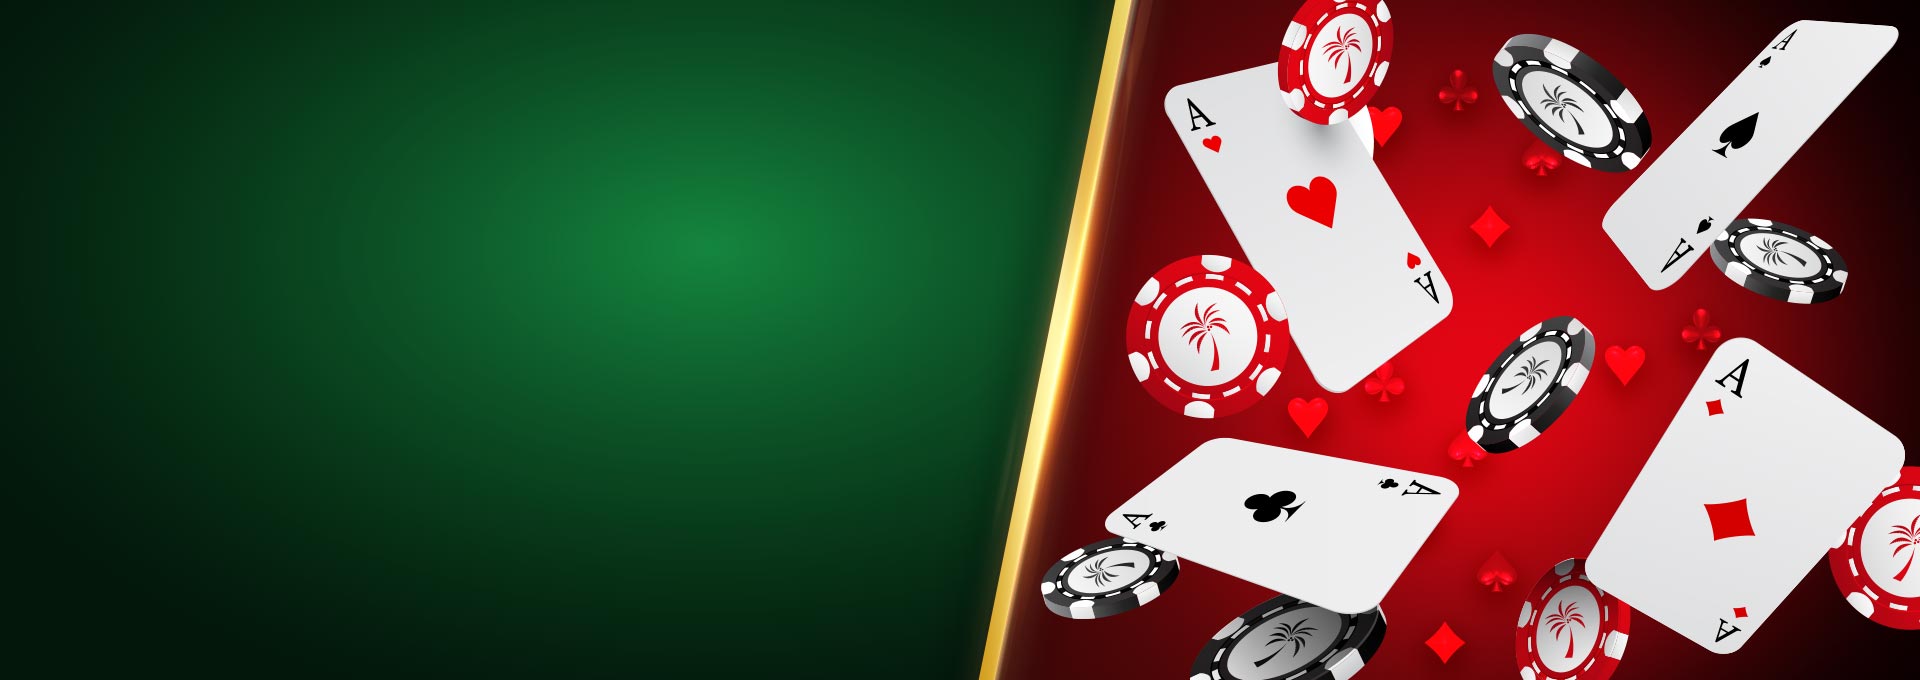 Lucky Sevens Blackjac slot online cassino gratis